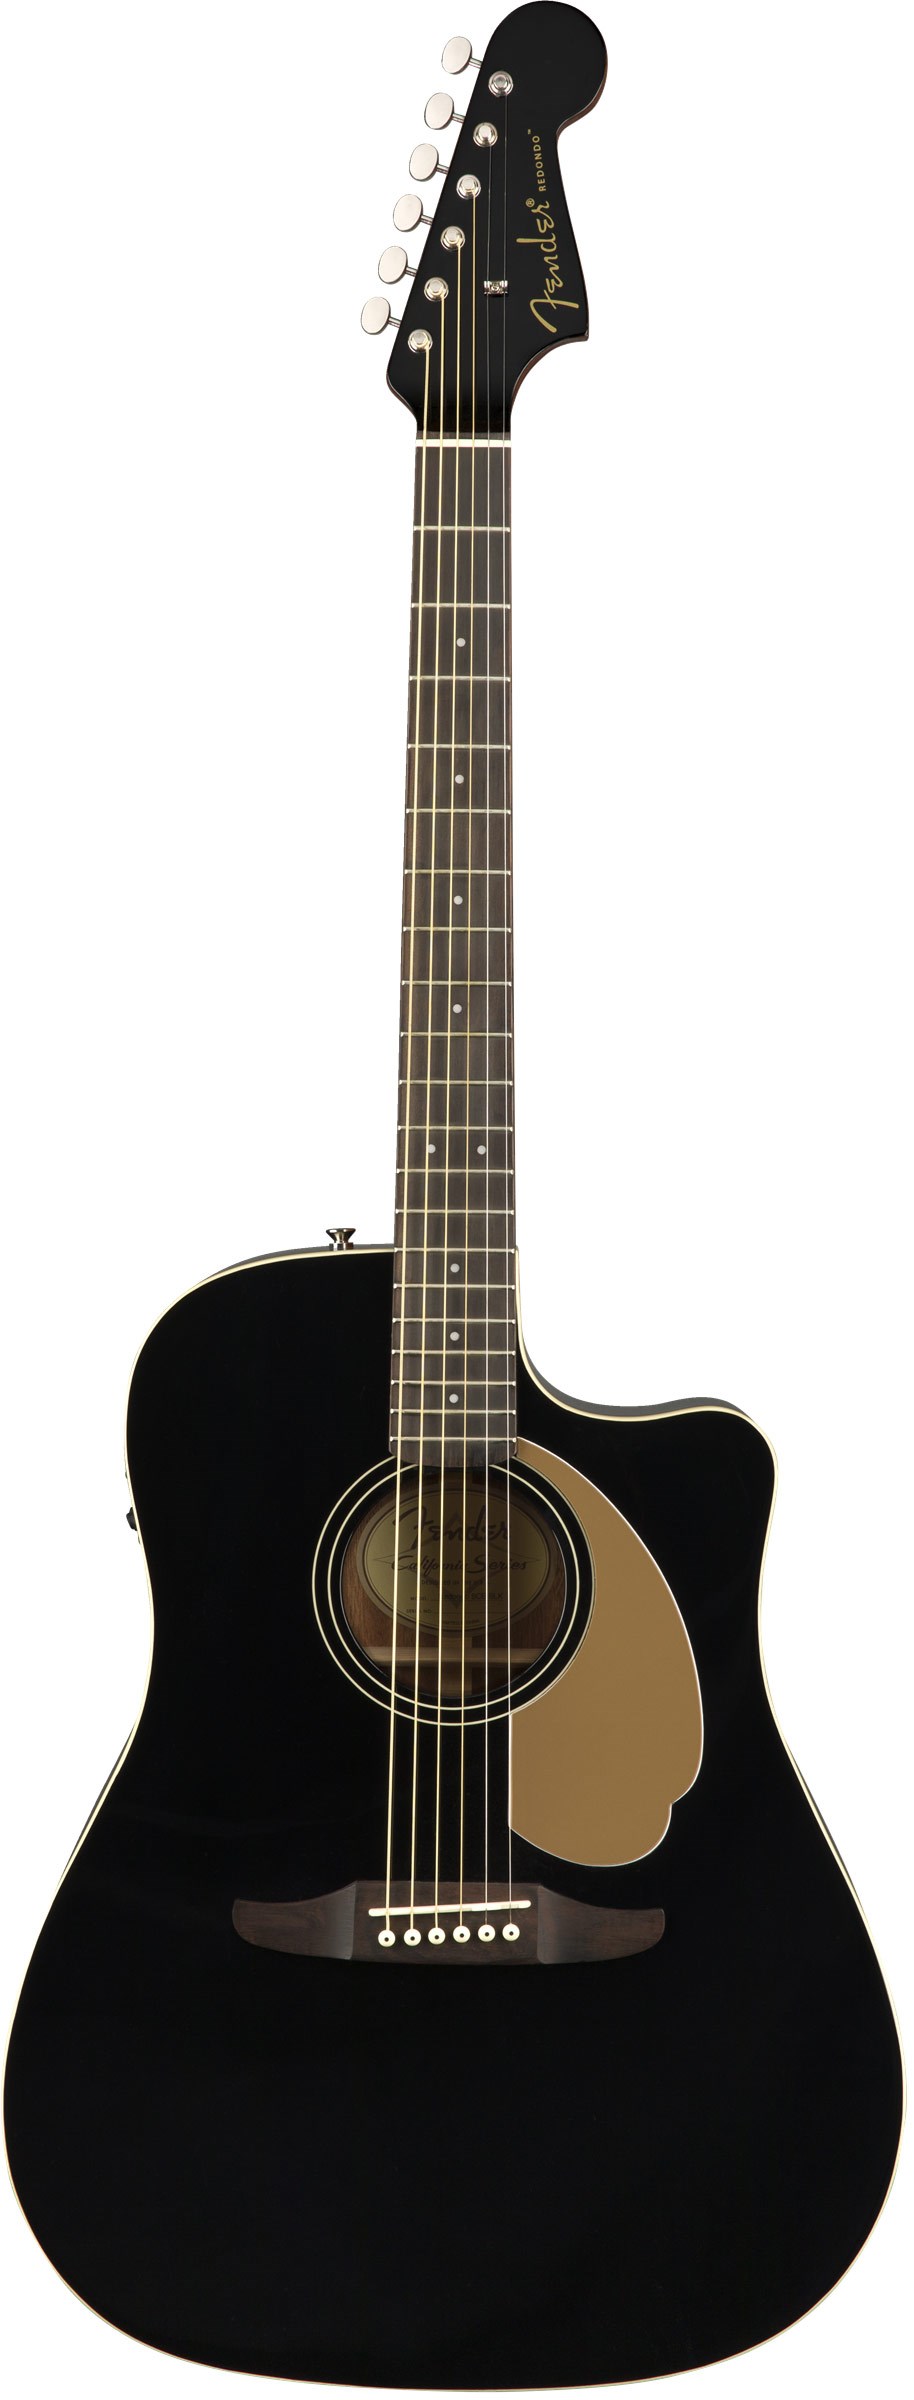 Fender California Series Redondo Player Jetty Black guitarguitar